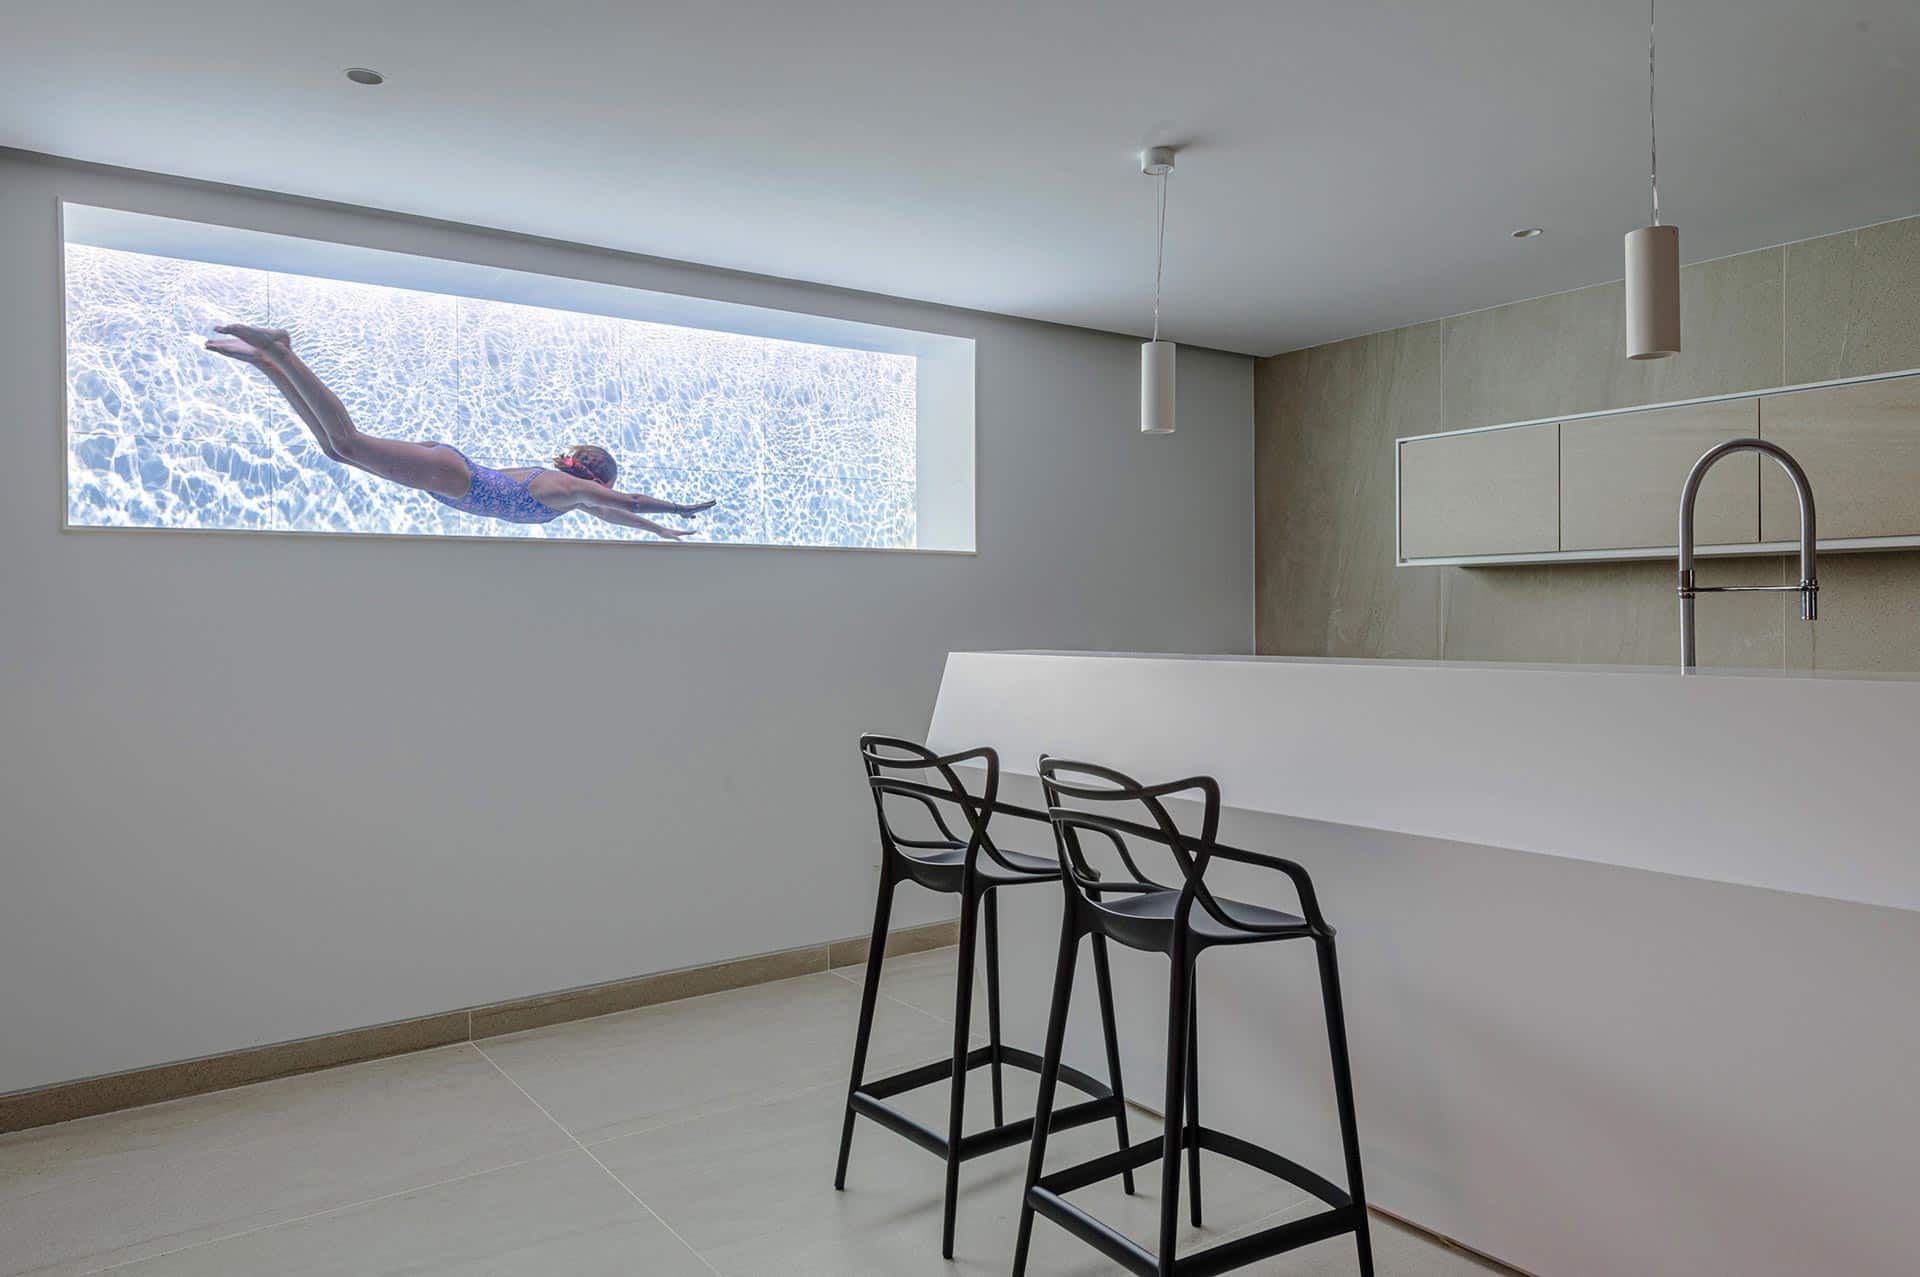 Barra de bar y ventana hacia piscina en casa moderna diseñada por Moah Arquitectos en Cantabria